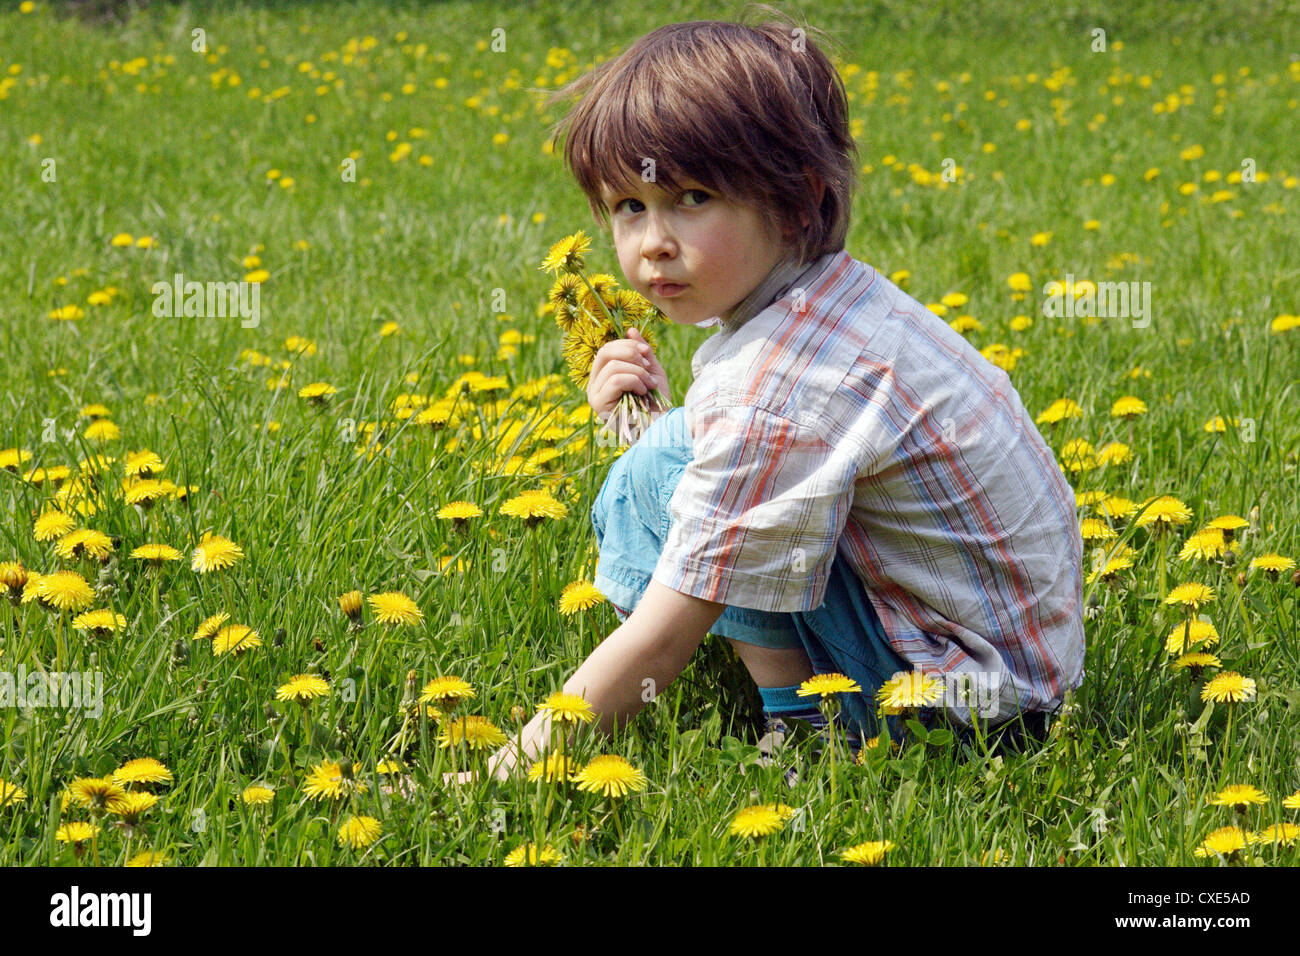 Leipzig, ein Kind auf einer Wiese Blumen pflücken Stockfotografie - Alamy